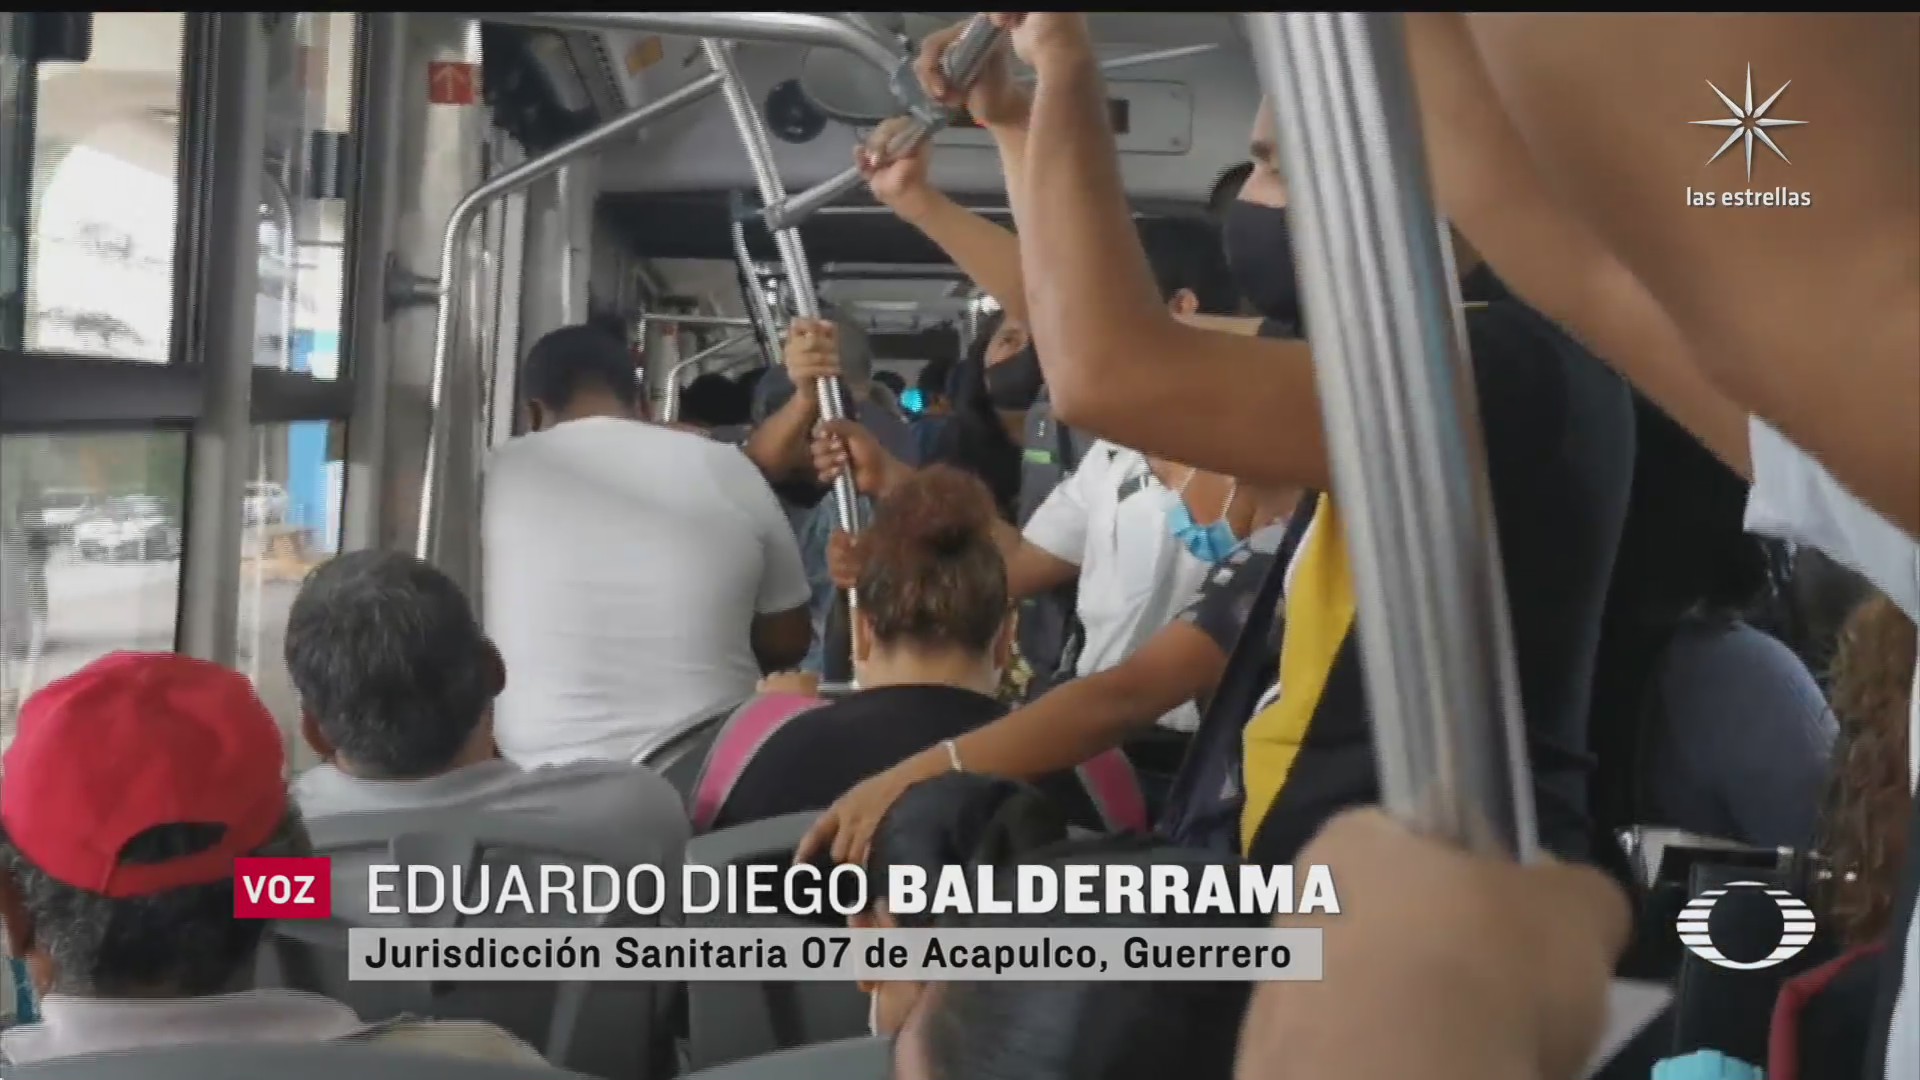 transporte publico en acapulco fuente de contagios masiva